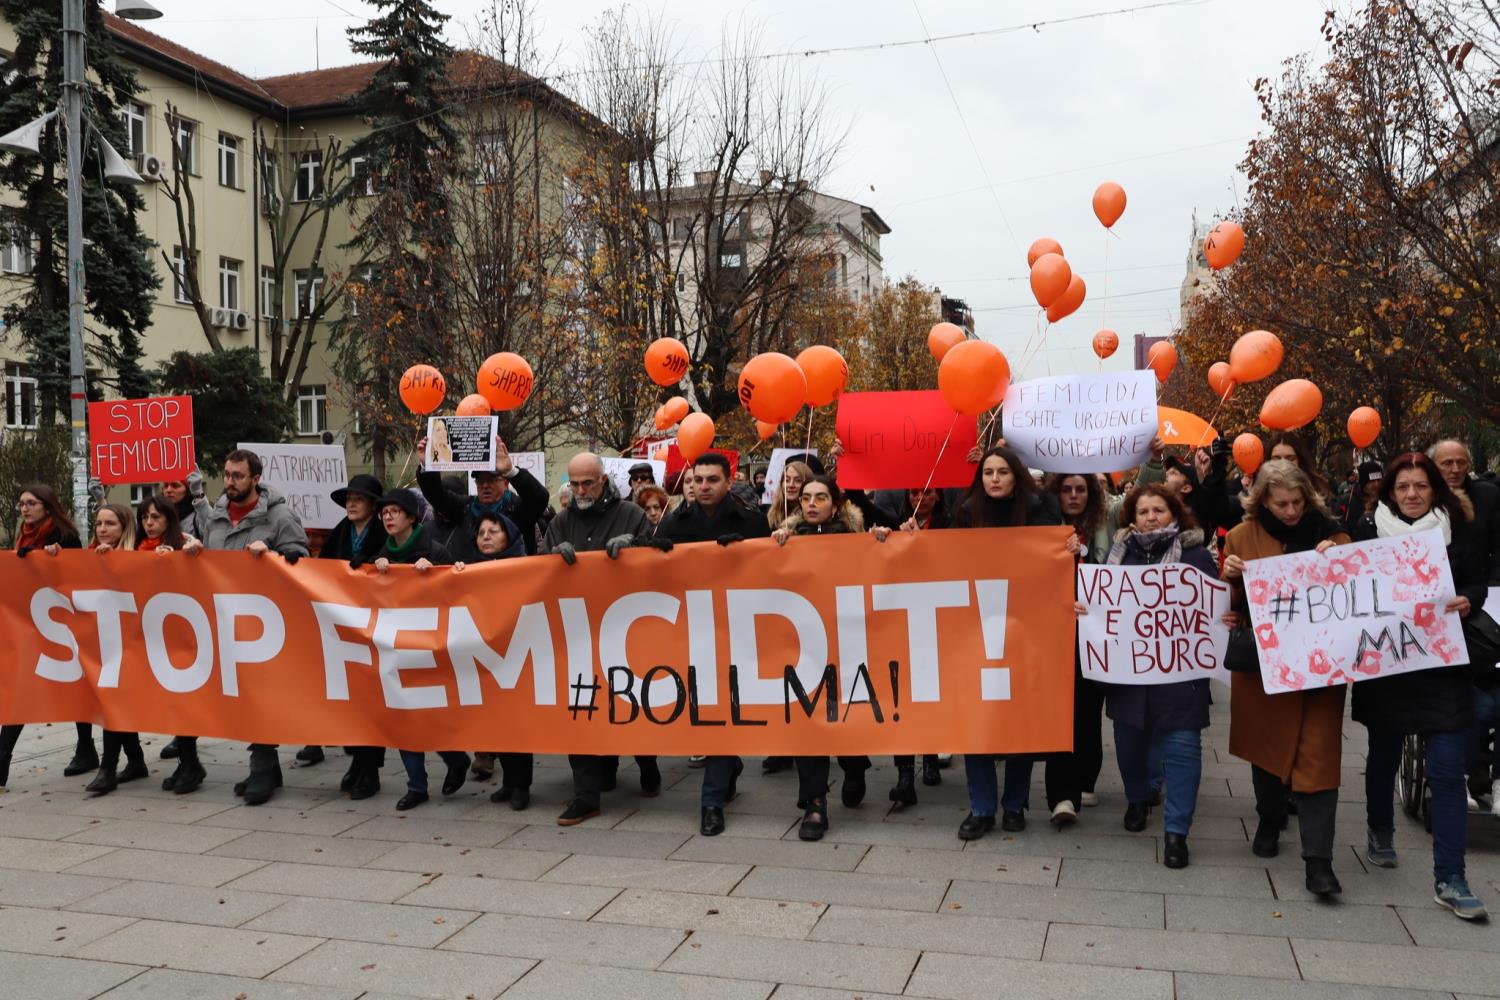 ✊Gra dhe vajza janë bashkuar për të marshuar kundër femicidit✊ “Stop Femicidit! #BollMa”